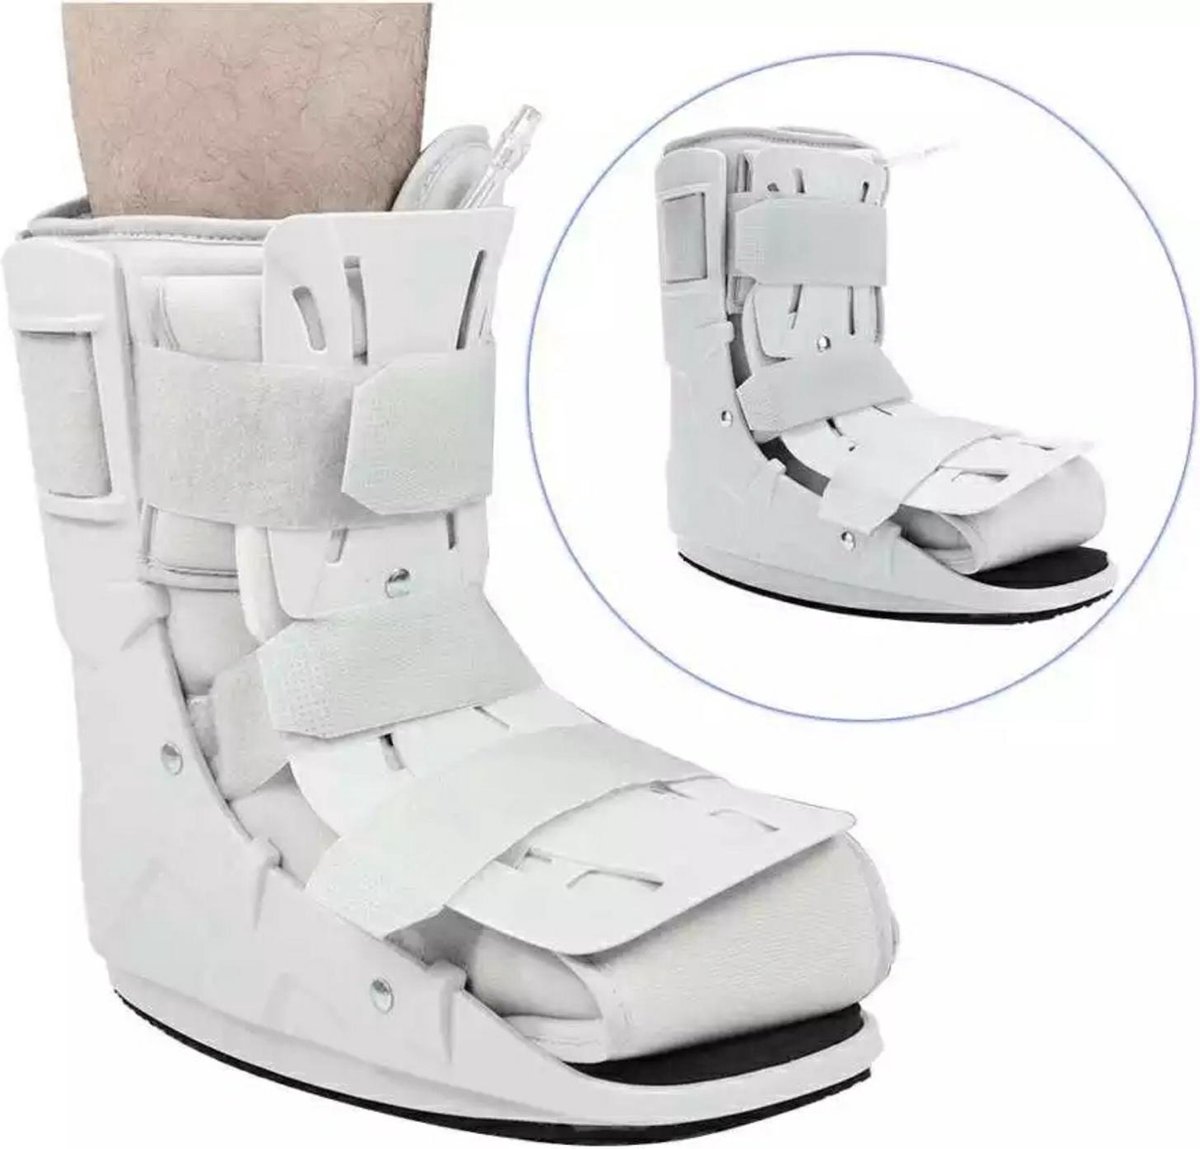 Ankle brace, voet brace, enkelbrace, enkel brace Maat XL, boots, enkel ondersteuning, air walker, enkel brace, orthopedic enkelbrace.